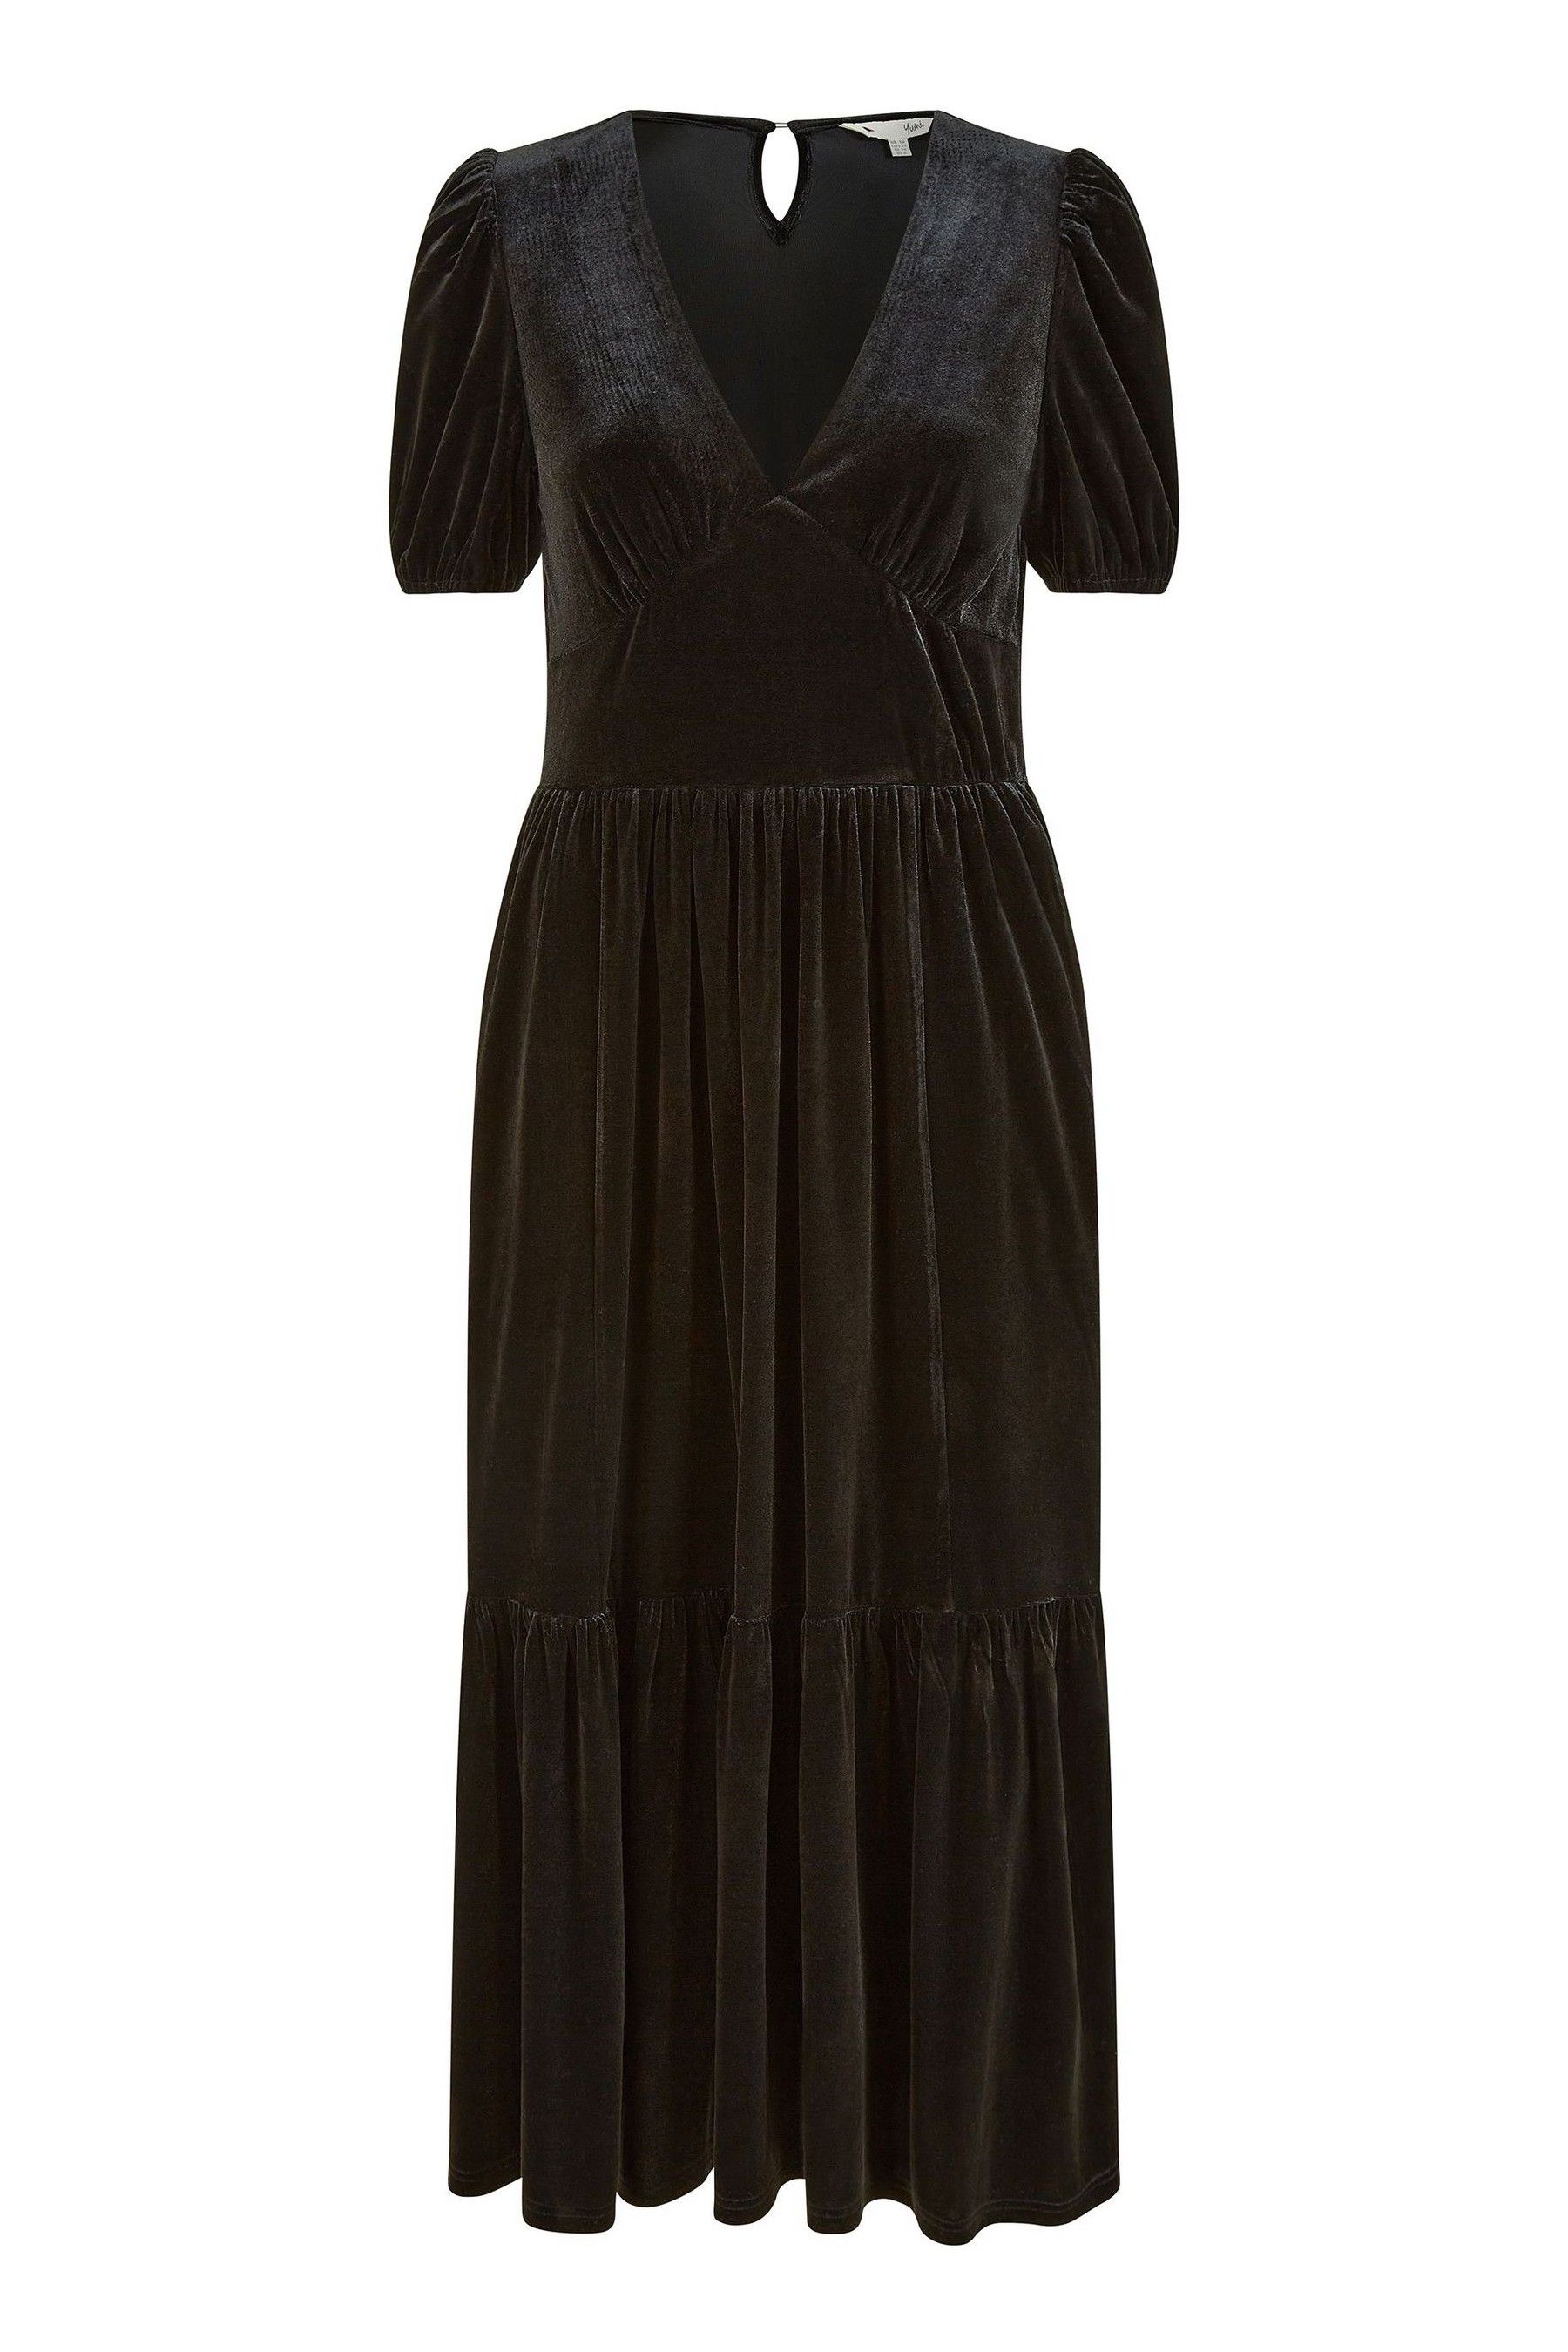 Buy Yumi Black Velvet Midi Dress from the Next UK online shop